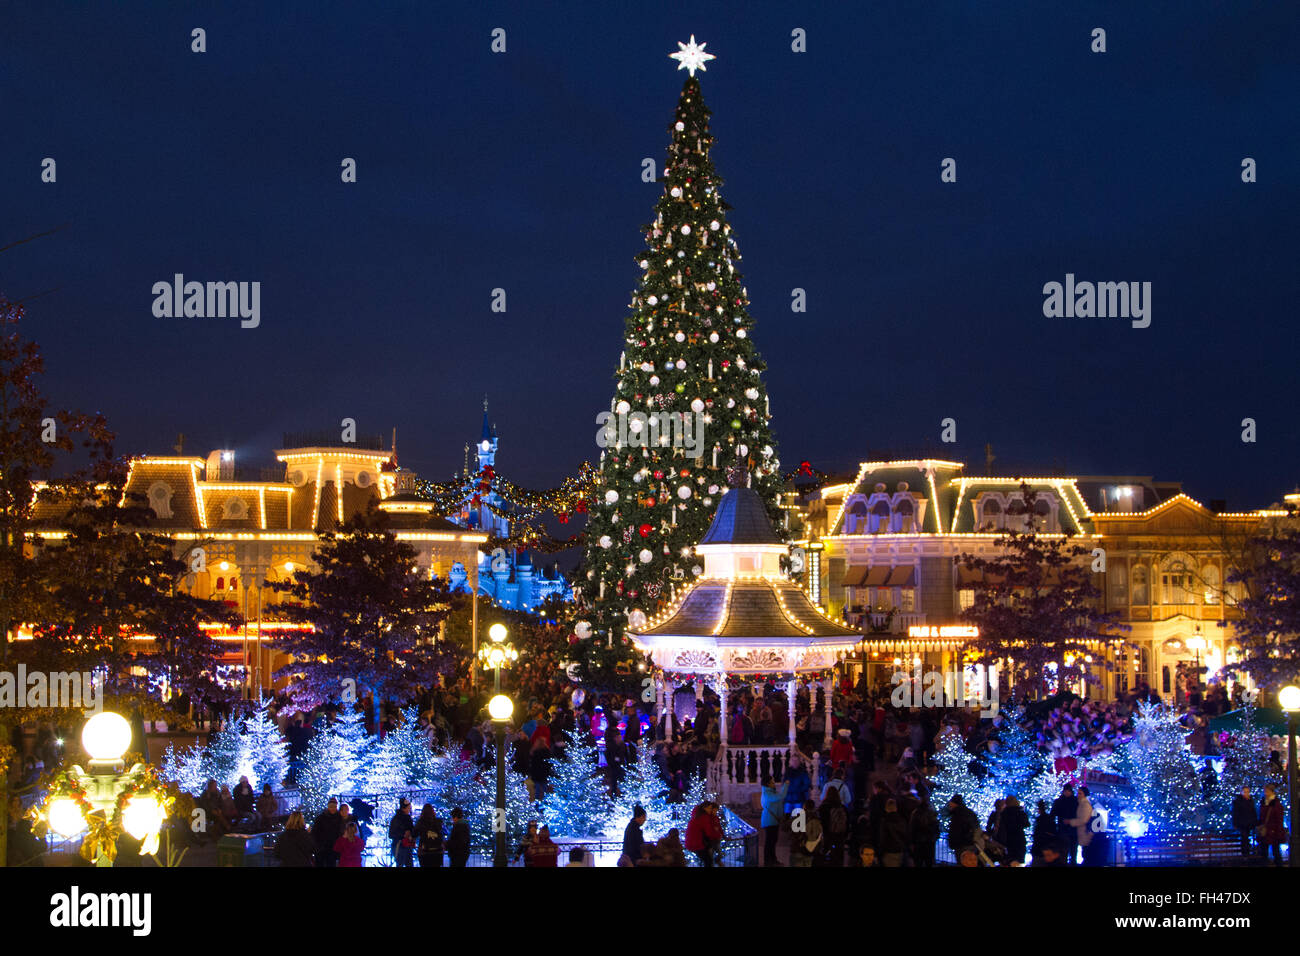 Weihnachtsbeleuchtung in Disneyland Paris Marne La Vallée, Frankreich Stockfoto